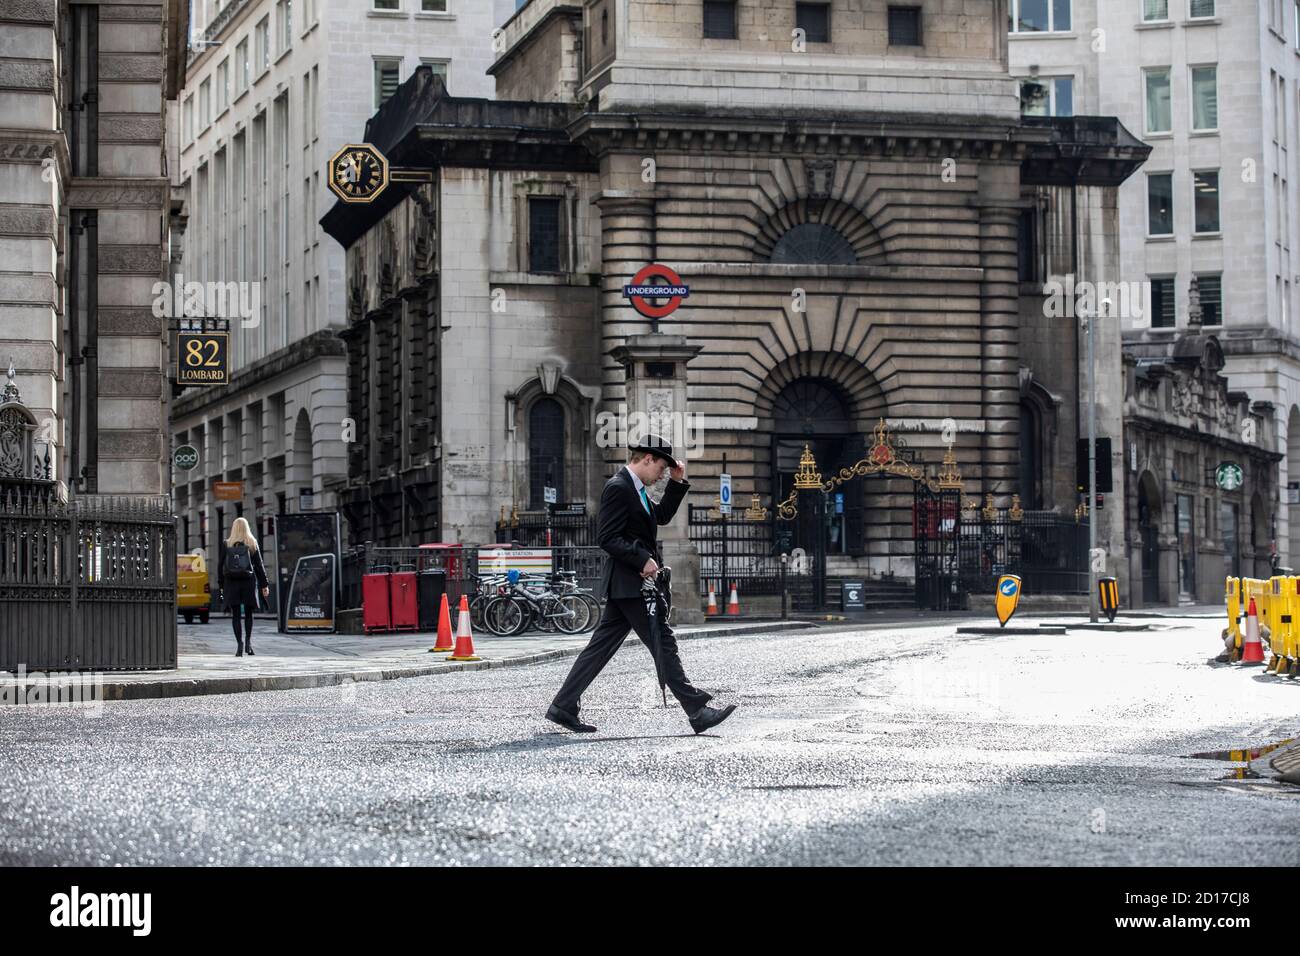 Il lavoratore che indossa un cappello bowler che porta un ombrello si fa strada attraverso Lombard Street nel quartiere finanziario della City of London, Inghilterra, UK Foto Stock